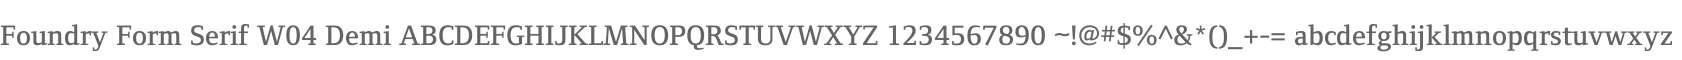 Foundry Form Serif W04 Demi